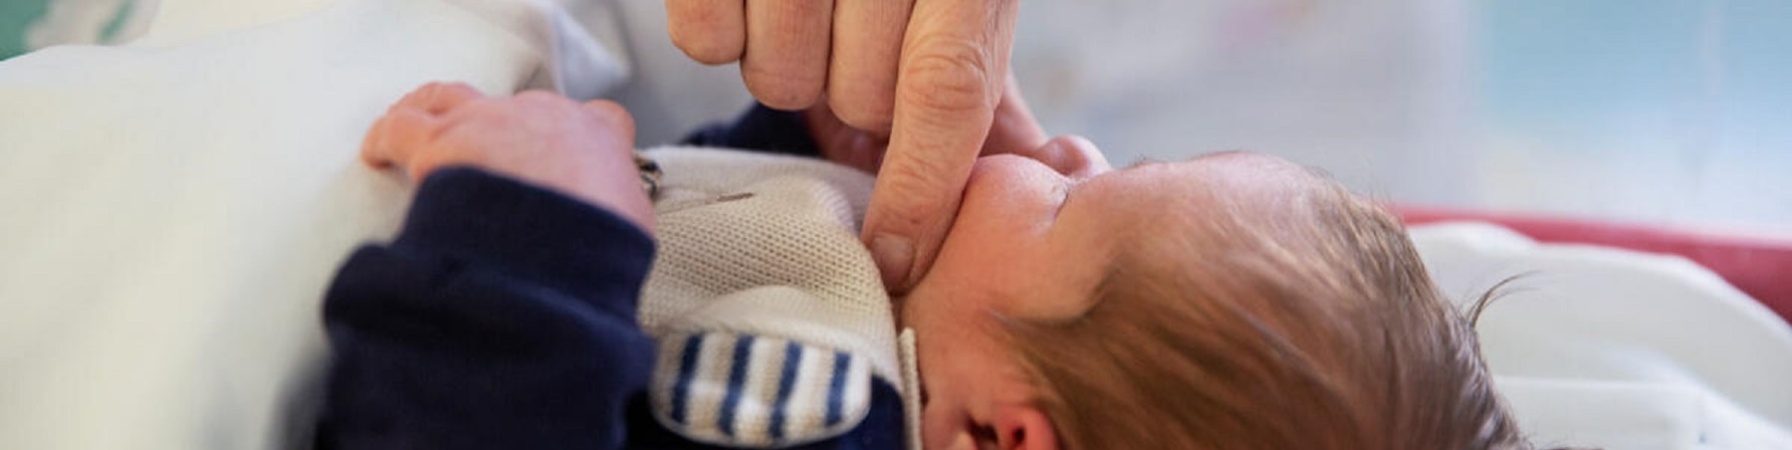 mano di un genitore a contatto skin to skin con neonato 